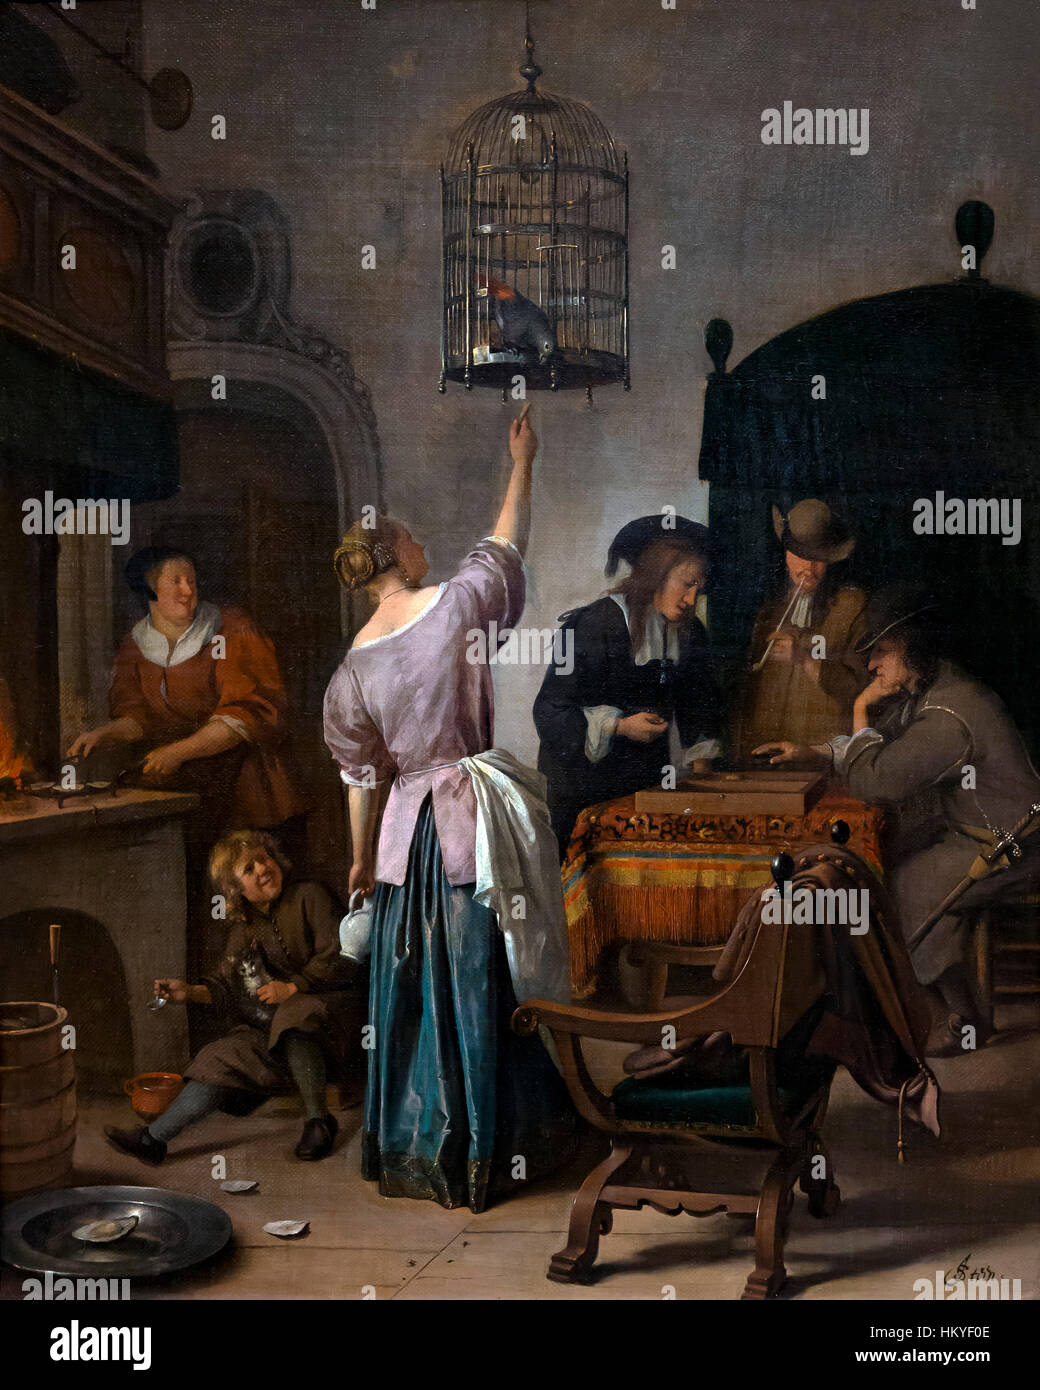 Intérieur avec une femme l'alimentation d'un perroquet, la Cage de perroquet, par Jan Steen, vers 1660-70, huile sur toile, Rijksmuseum, Amsterdam, Pays-Bas, Europe, Banque D'Images